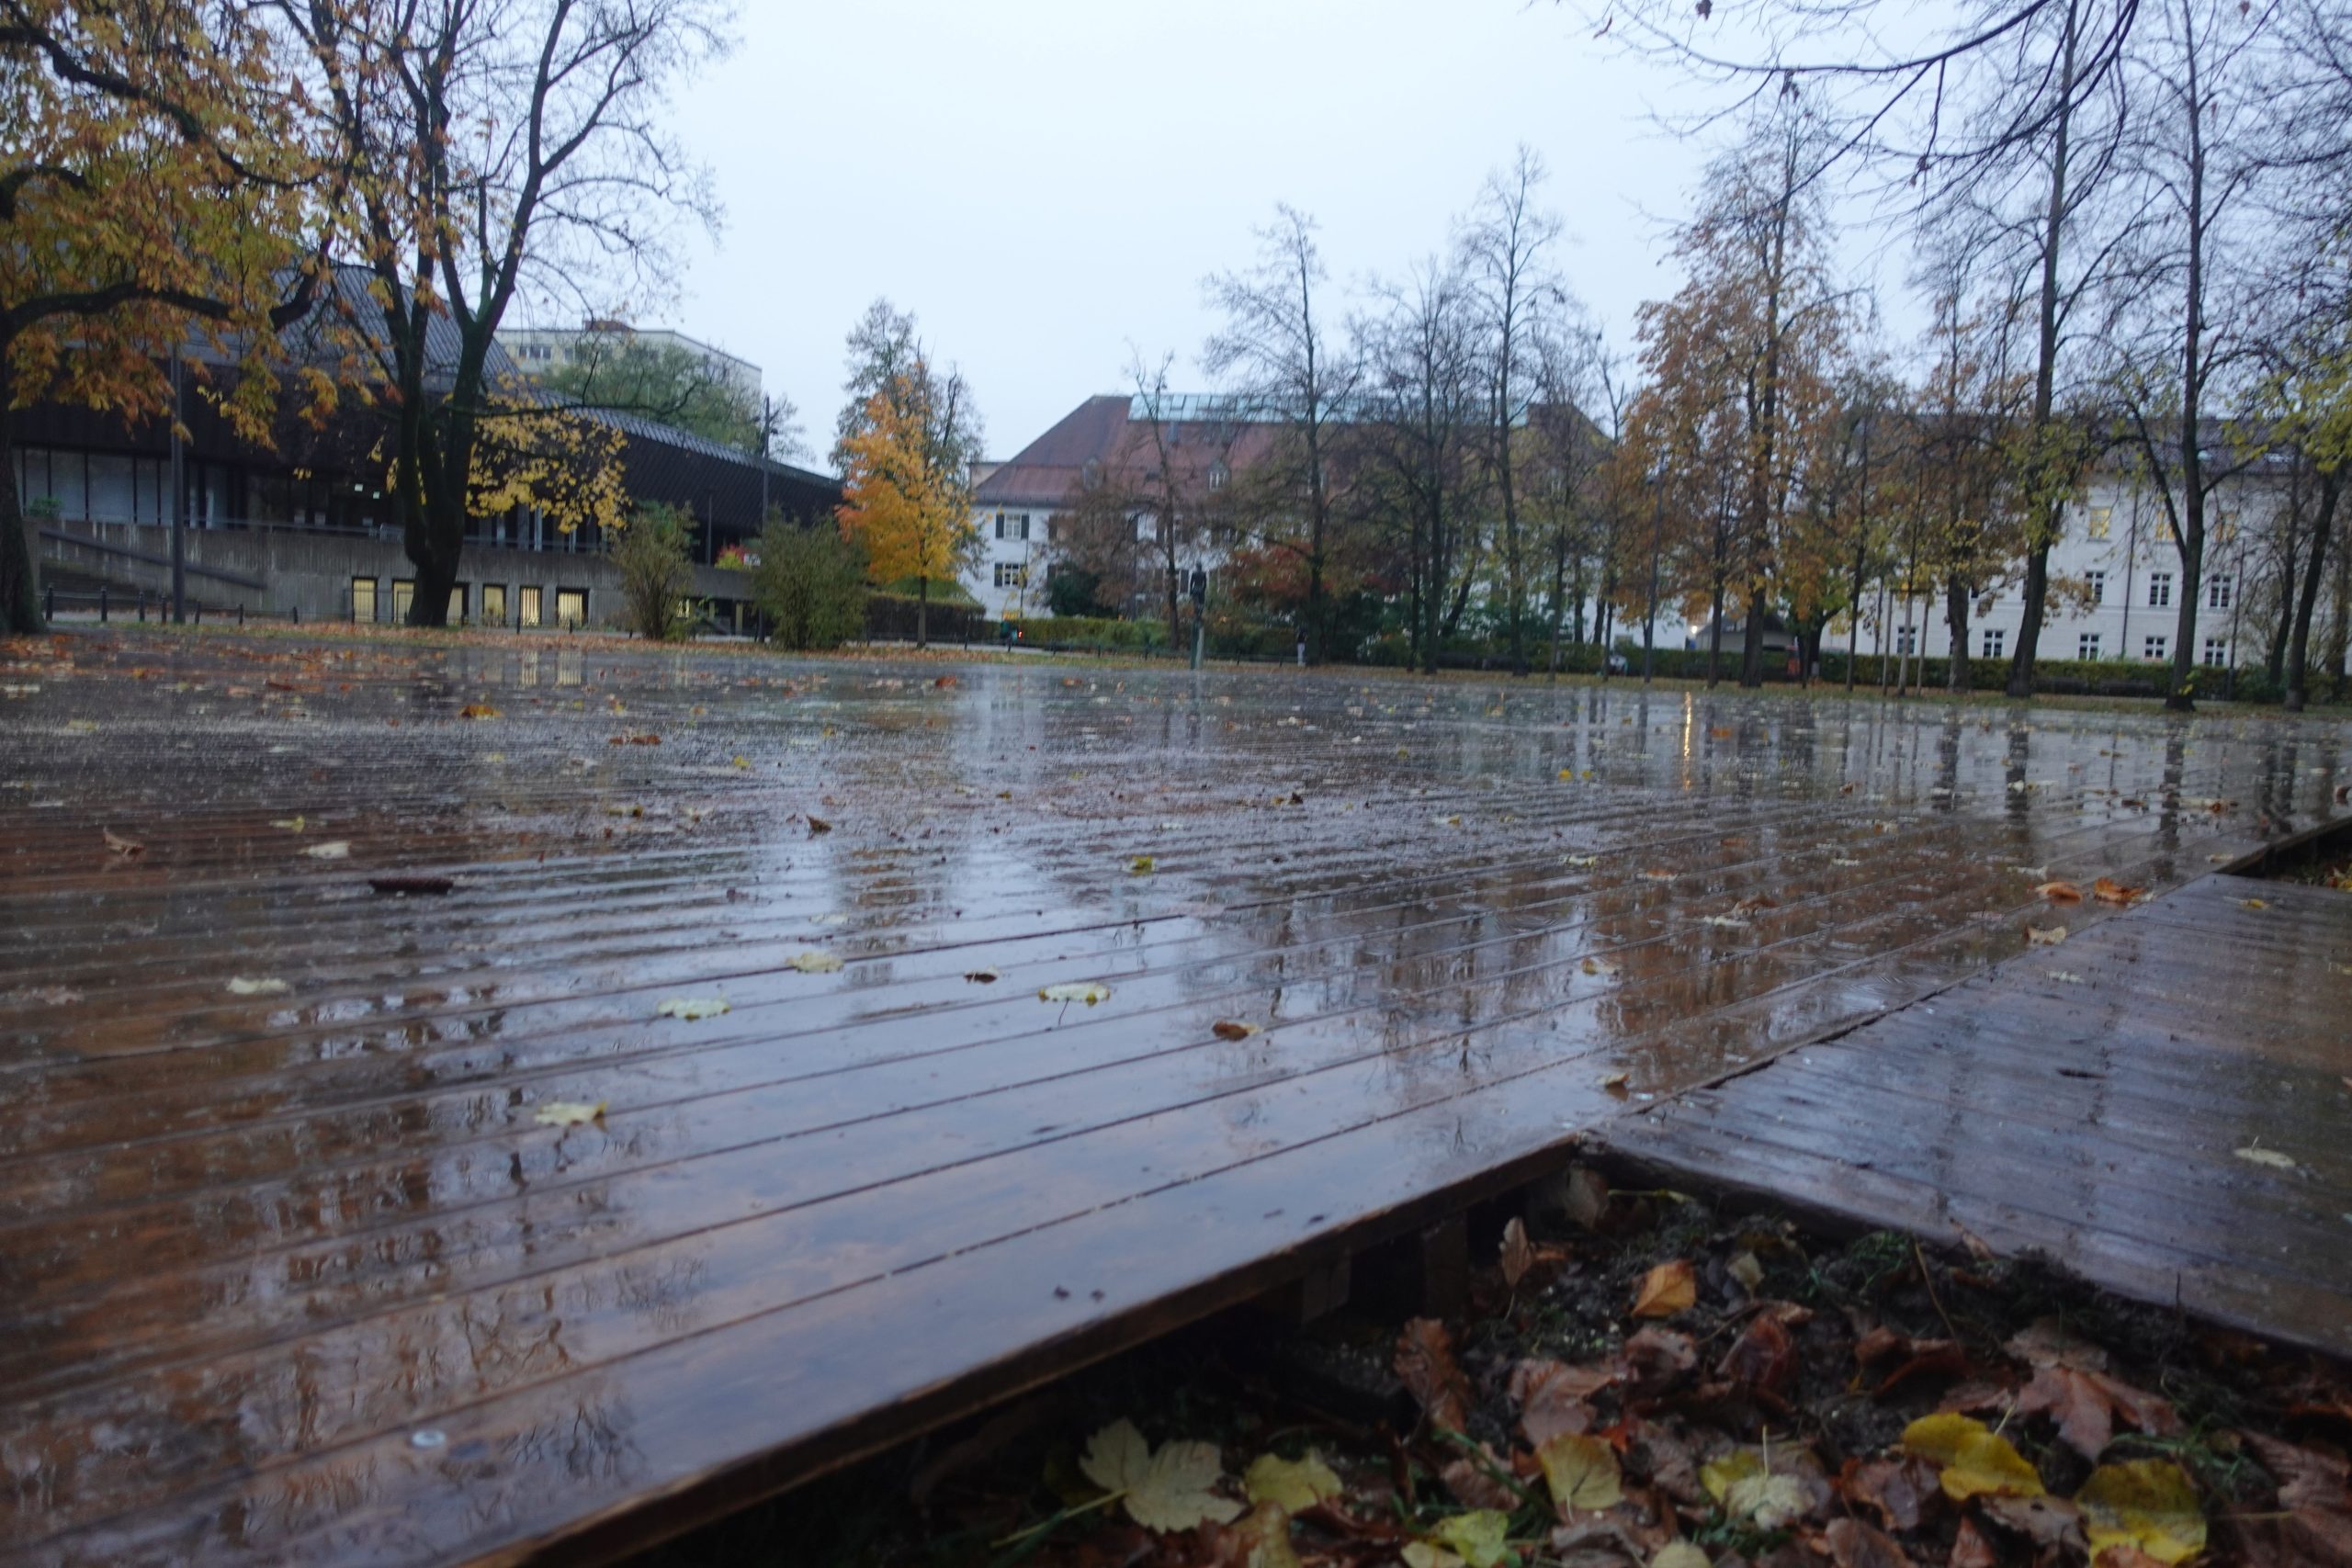 Holzbodenuntergrund für Eislauf im Salingarten Rosenheim. Foto: Innpuls.me